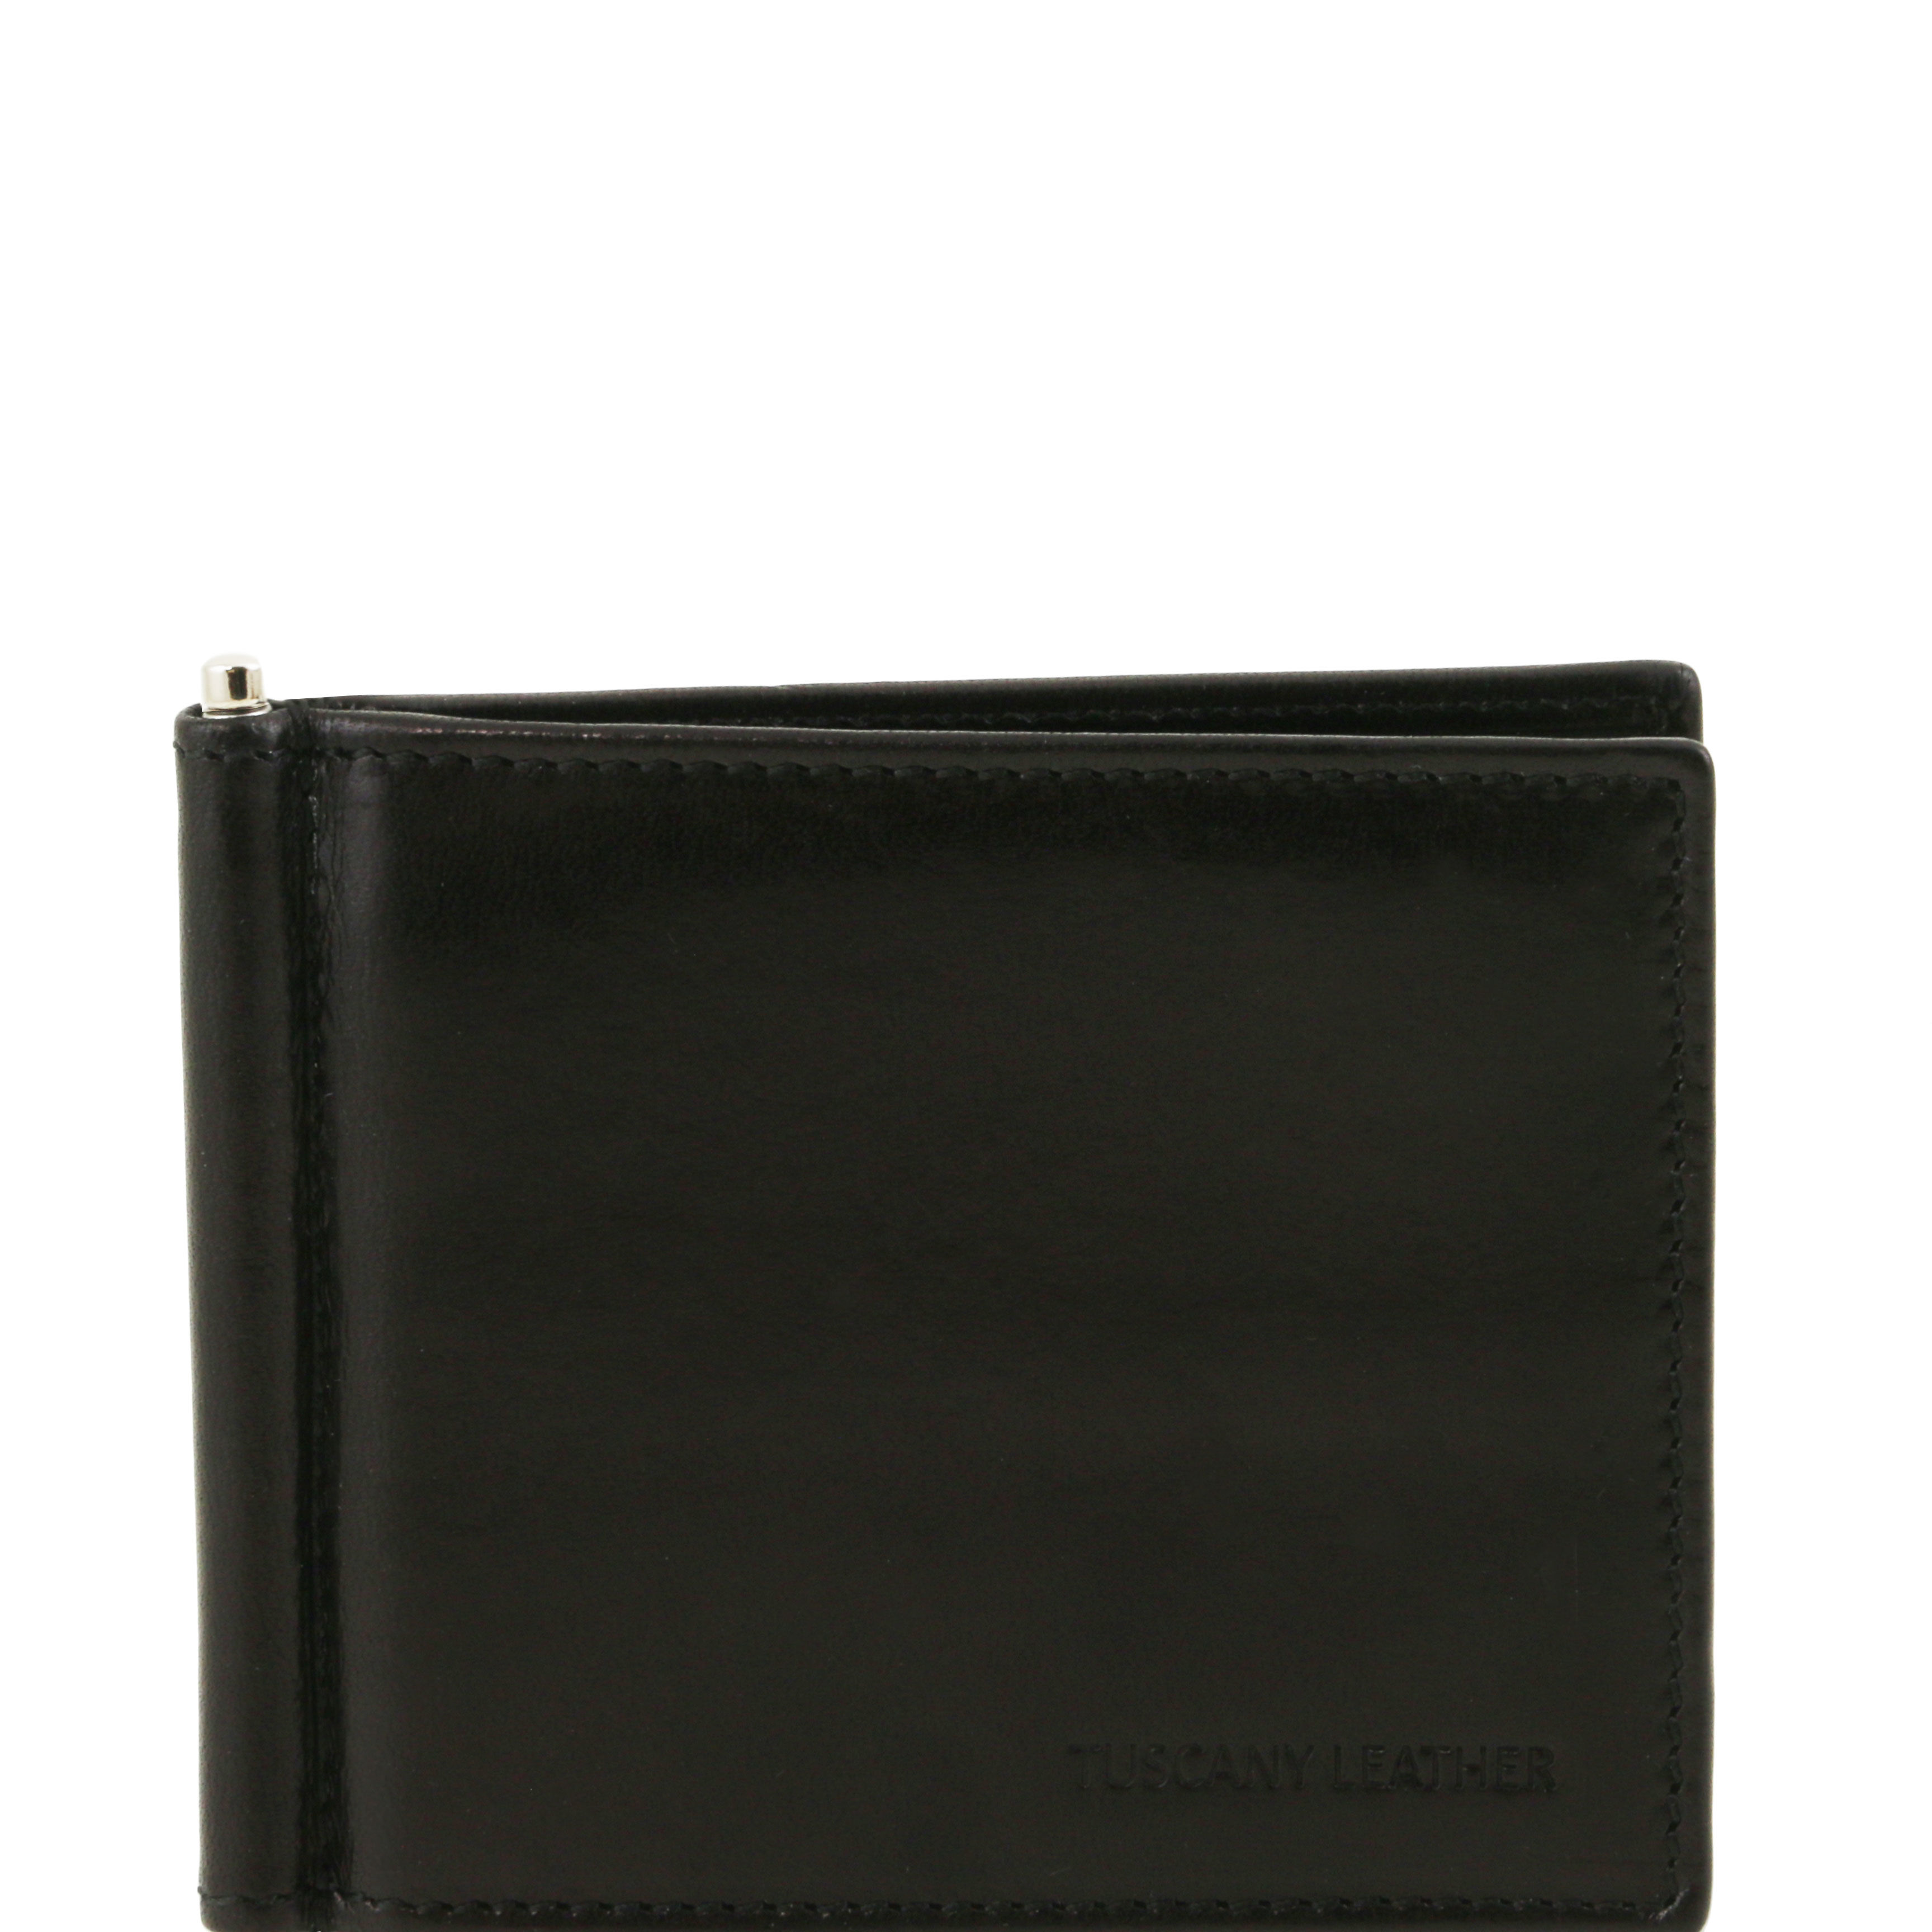 Portofel Tuscany Leather din piele negru credit/business cu cleste pentru bancnote